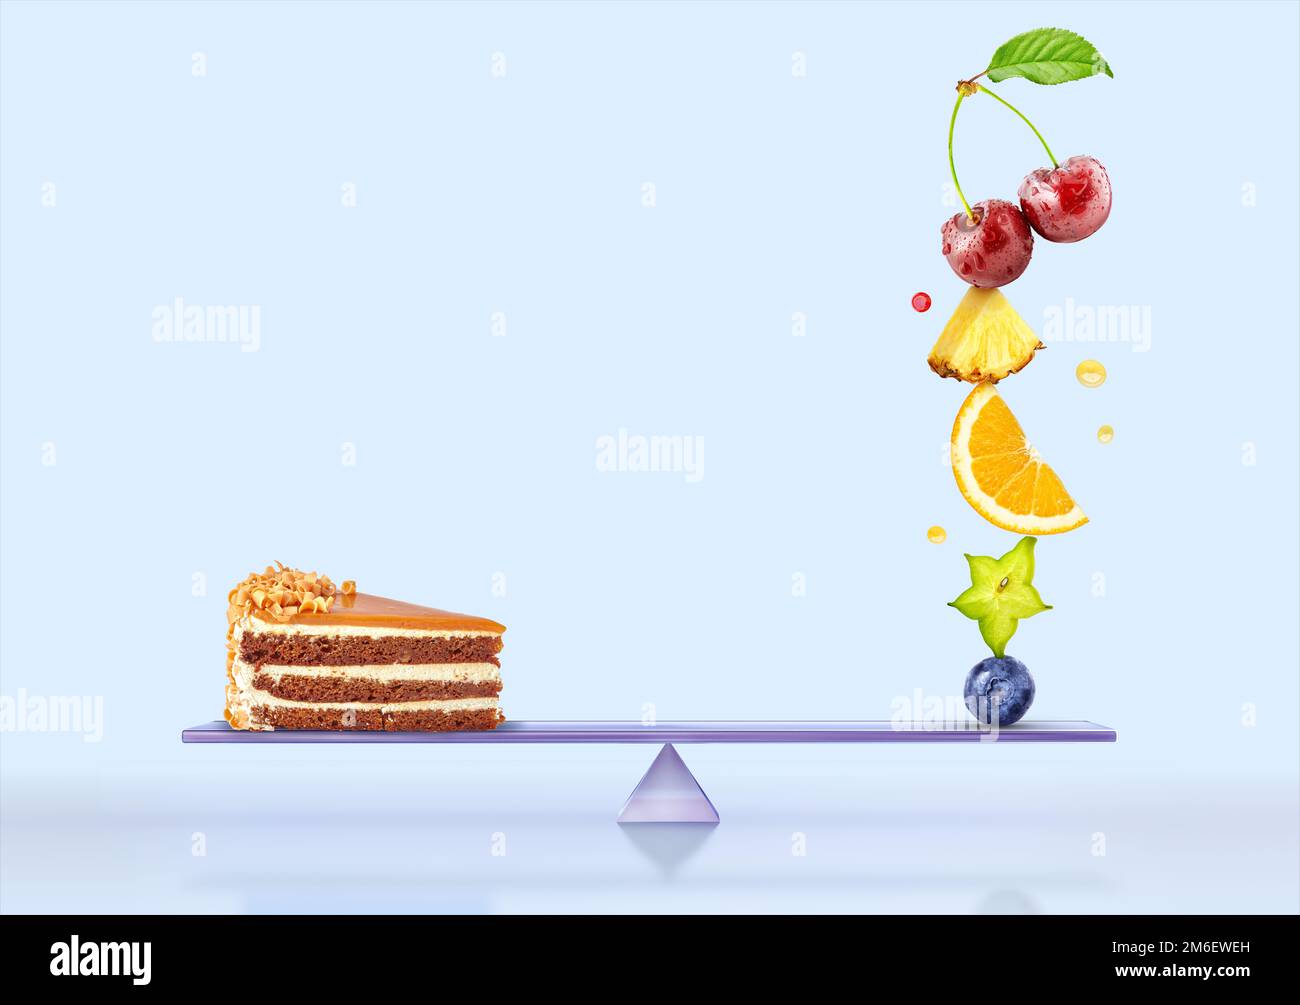 Ein Stapel frischer Beeren und süßer Fast-Food-Kuchen auf Waagen, isoliert auf blauem Hintergrund, gleicht sich aus. Gesundes Leben, richtige Ernährung, Gewichtsverlust, b Stockfoto